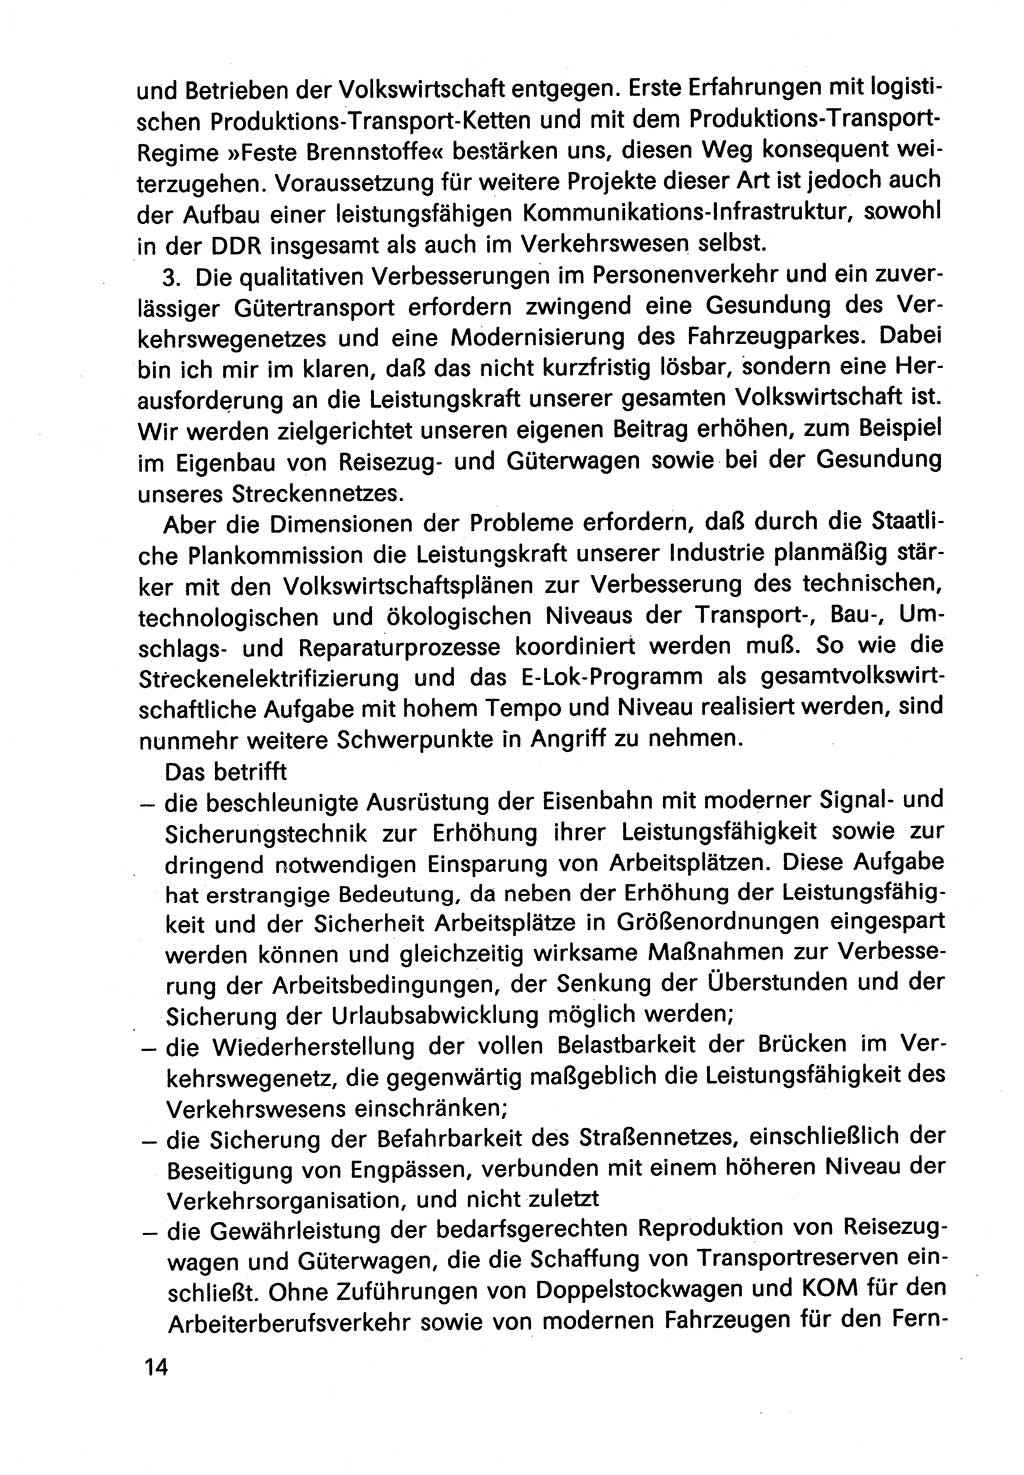 Diskussionsbeiträge, 10. Tagung des ZK (Zentralkomitee) der SED (Sozialistische Einheitspartei Deutschlands) [Deutsche Demokratische Republik (DDR)] 1989, Seite 14 (Disk.-Beitr. 10. Tg. ZK SED DDR 1989, S. 14)